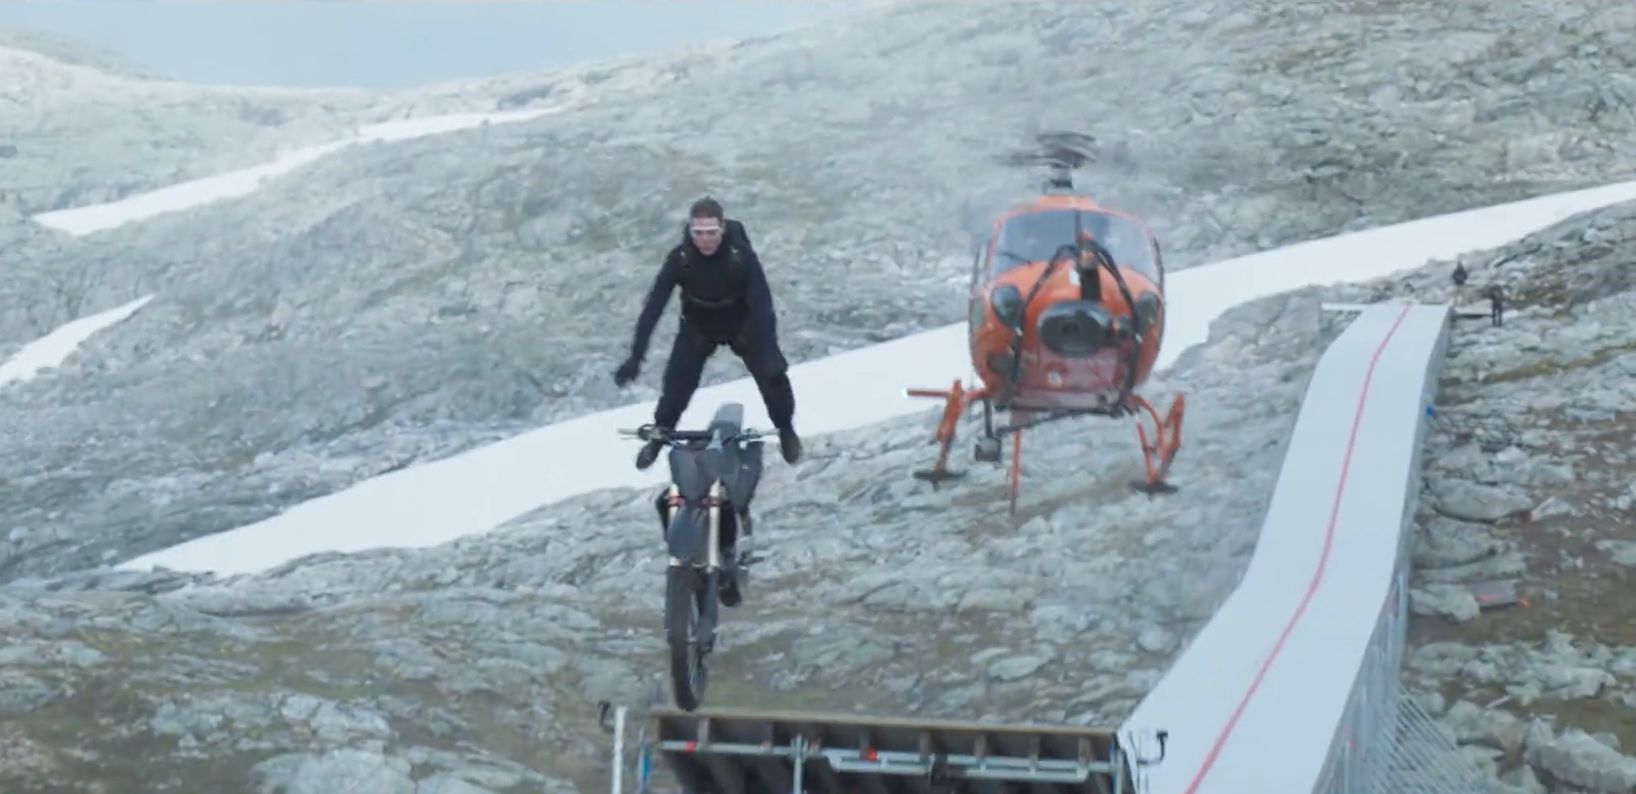 Mission Impossible 7 : Tom Cruise fait la cascade la plus dangereuse du cinéma en sautant dans le vide d'une falaise en moto